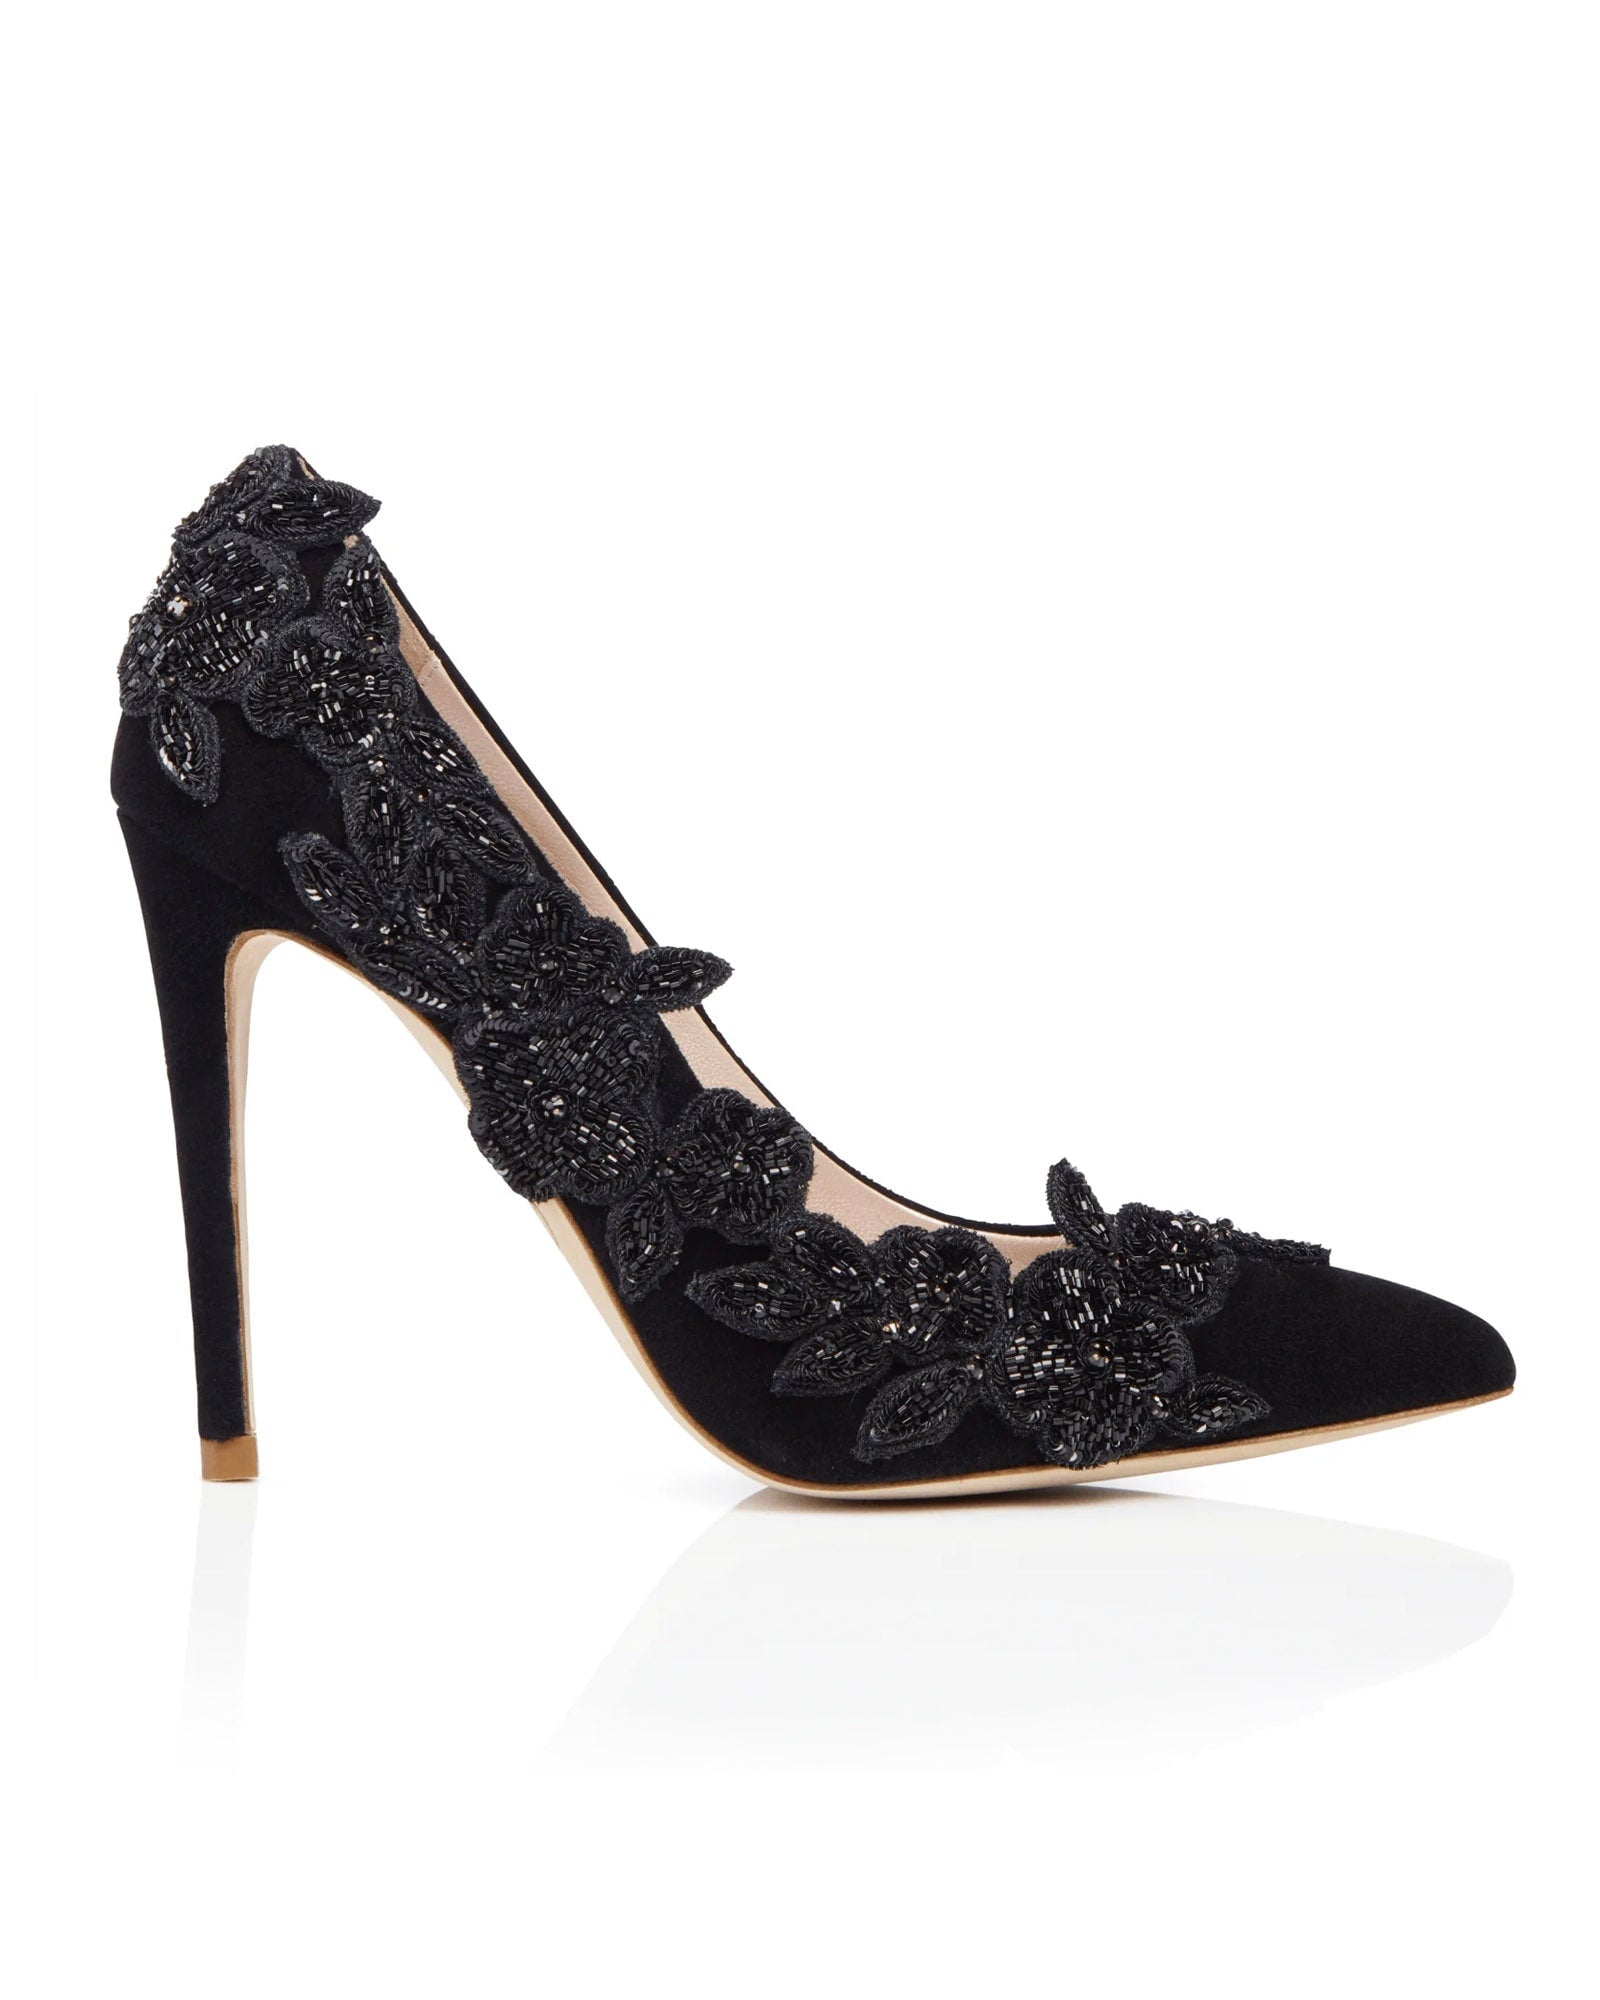 Isadora Jet Black Fashion Shoe Floral Embellished Shoe  image